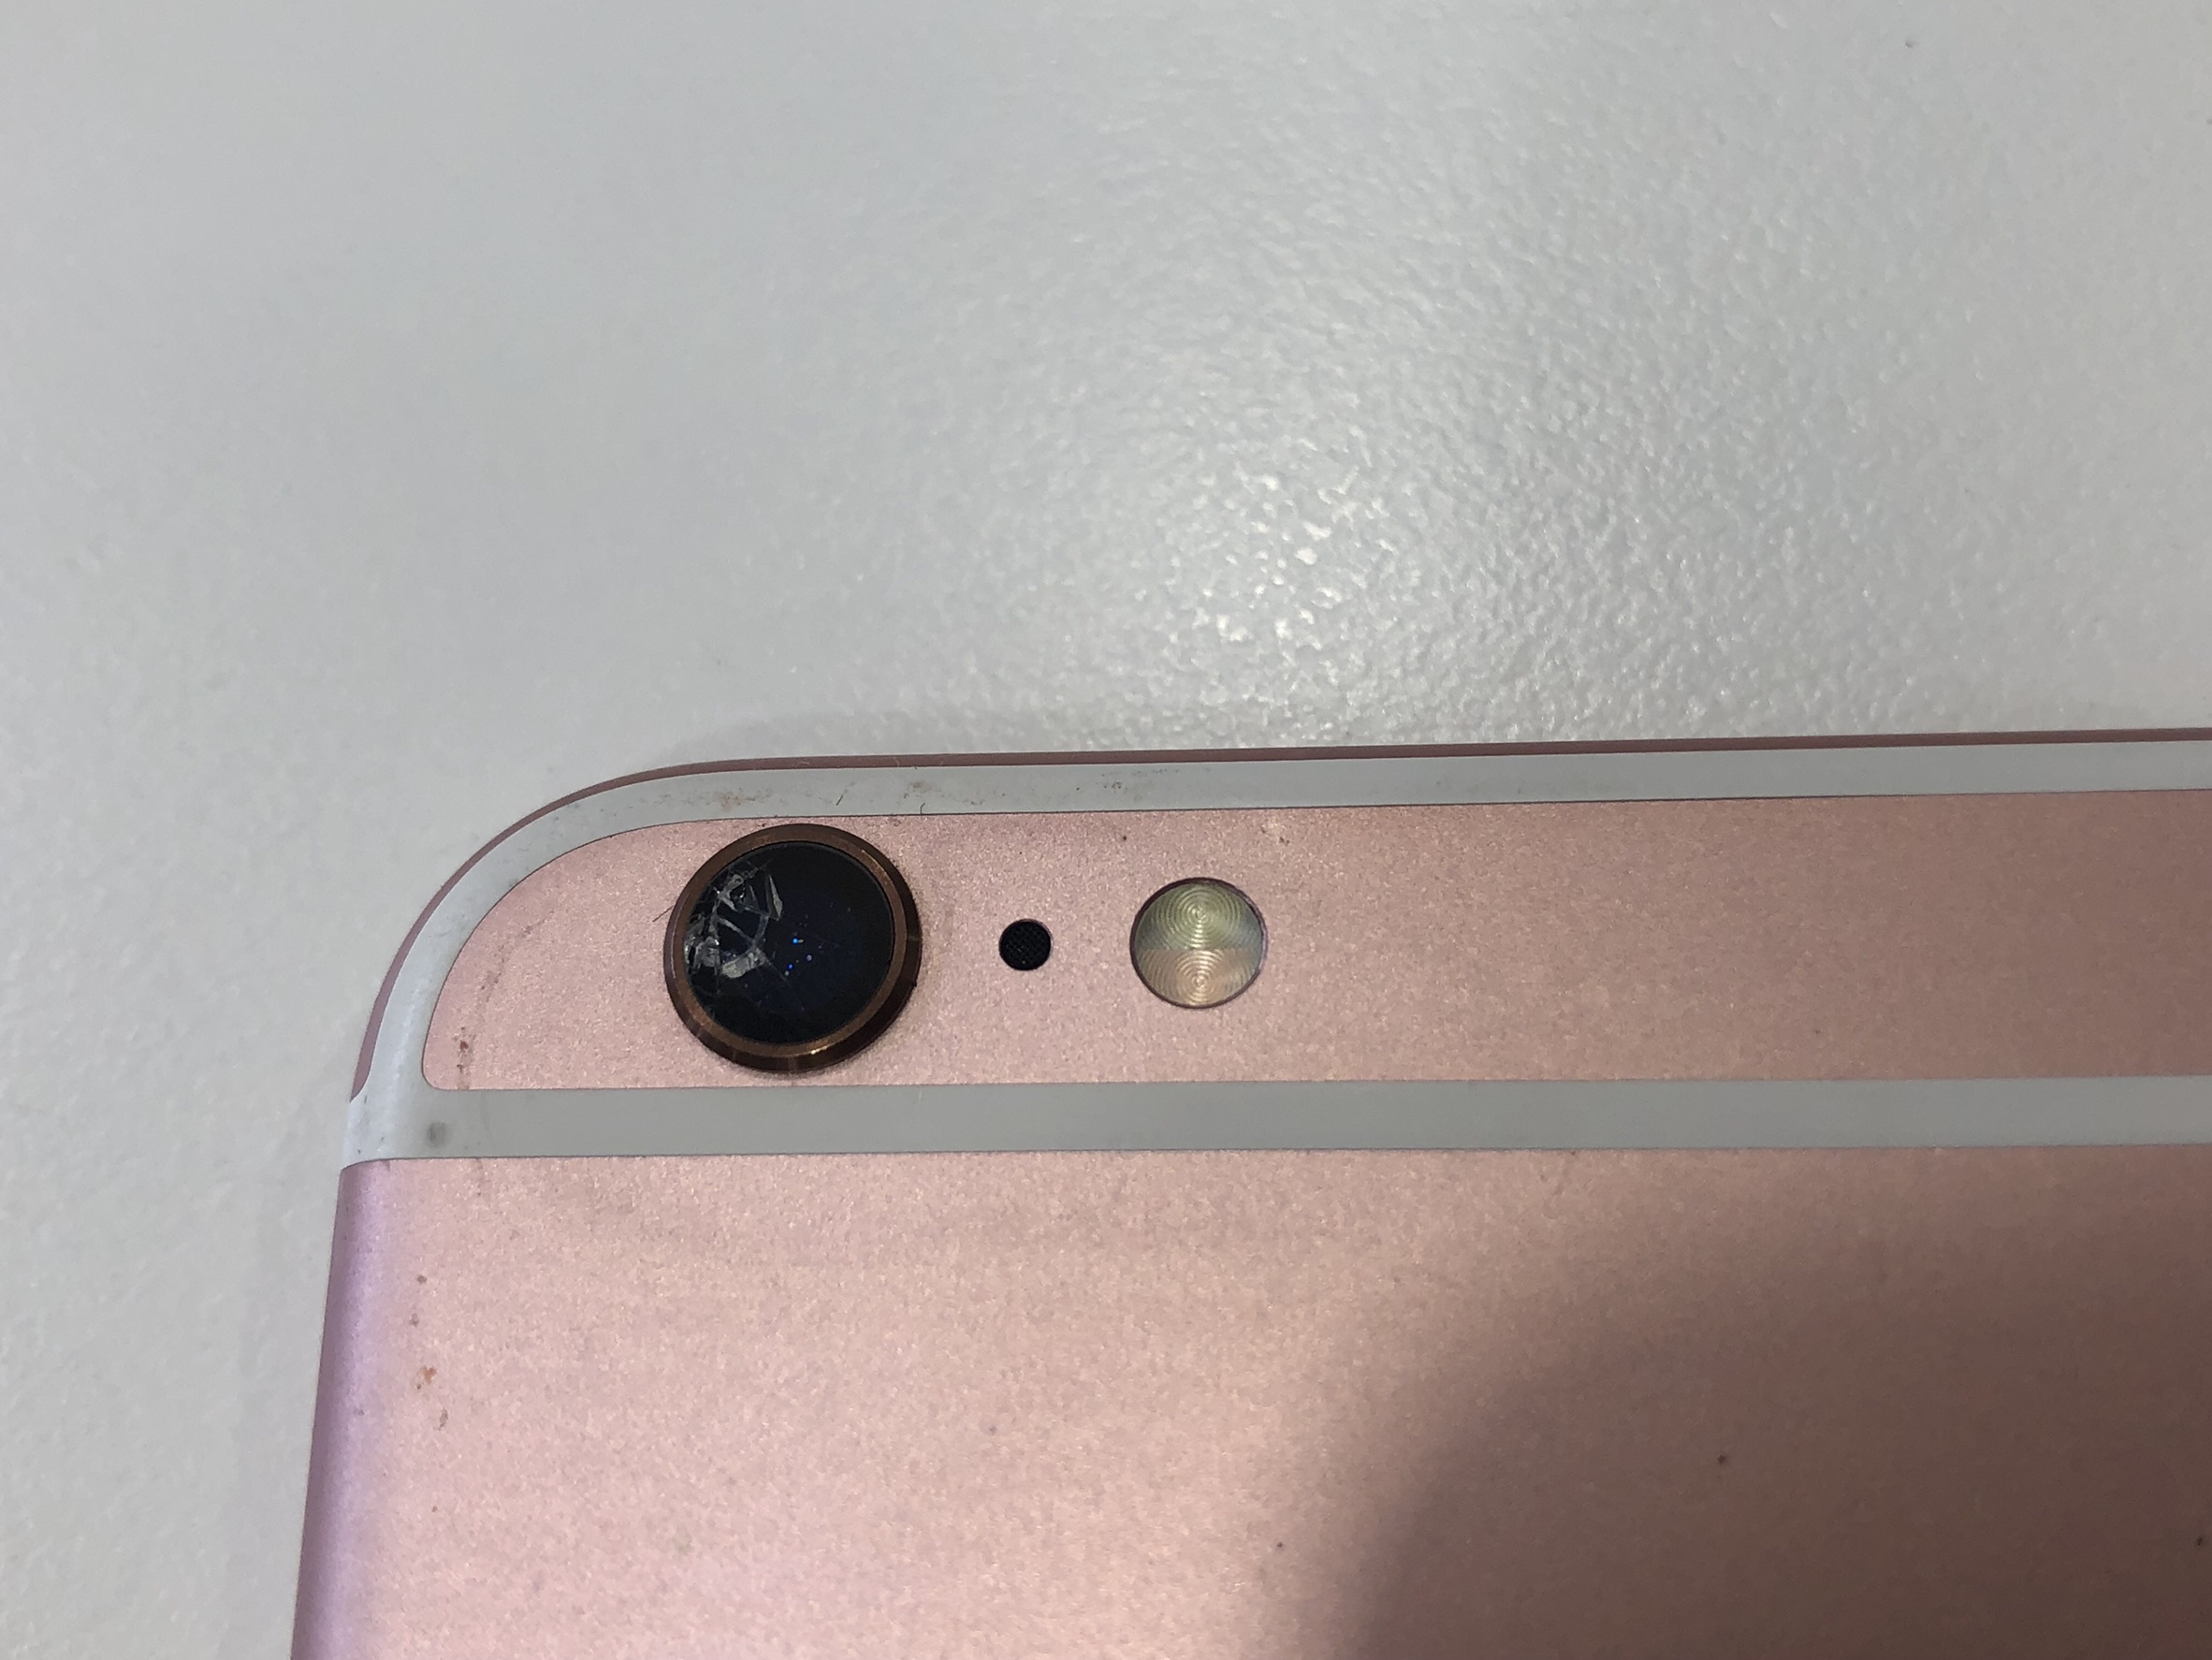 Iphone6splusのカメラレンズ修理です レンズだけと思いきや カメラにもキズが付いているﾊﾟﾀｰﾝが多いです Iphone修理を北九州でお探しの方ならスマップル北九州小倉店